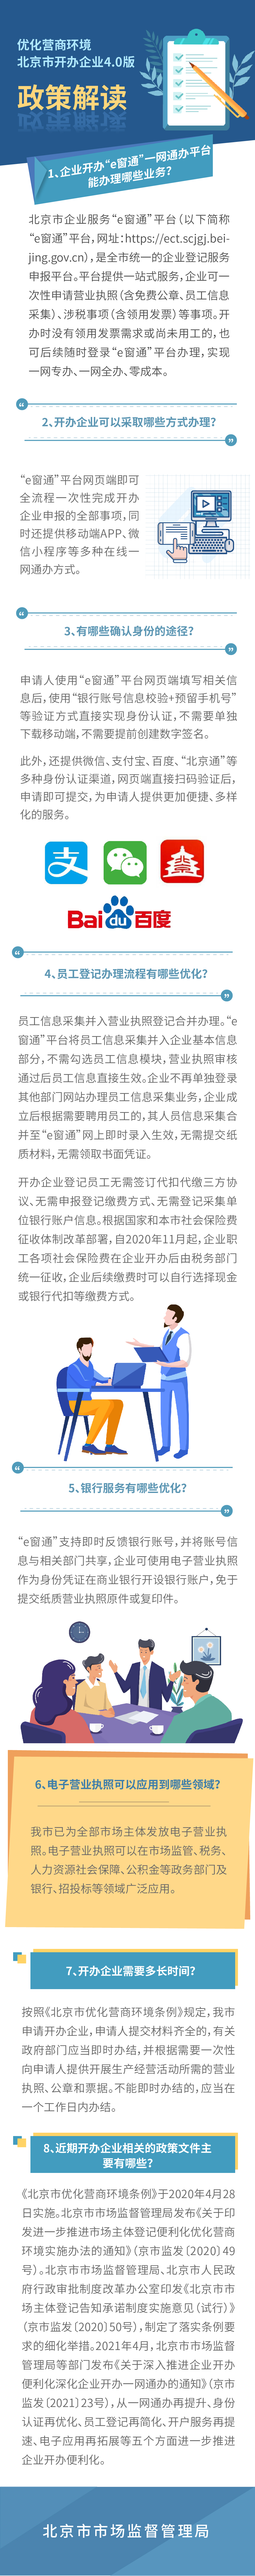 圖解：優化營商環境 北京市開辦企業4.0版.jpg